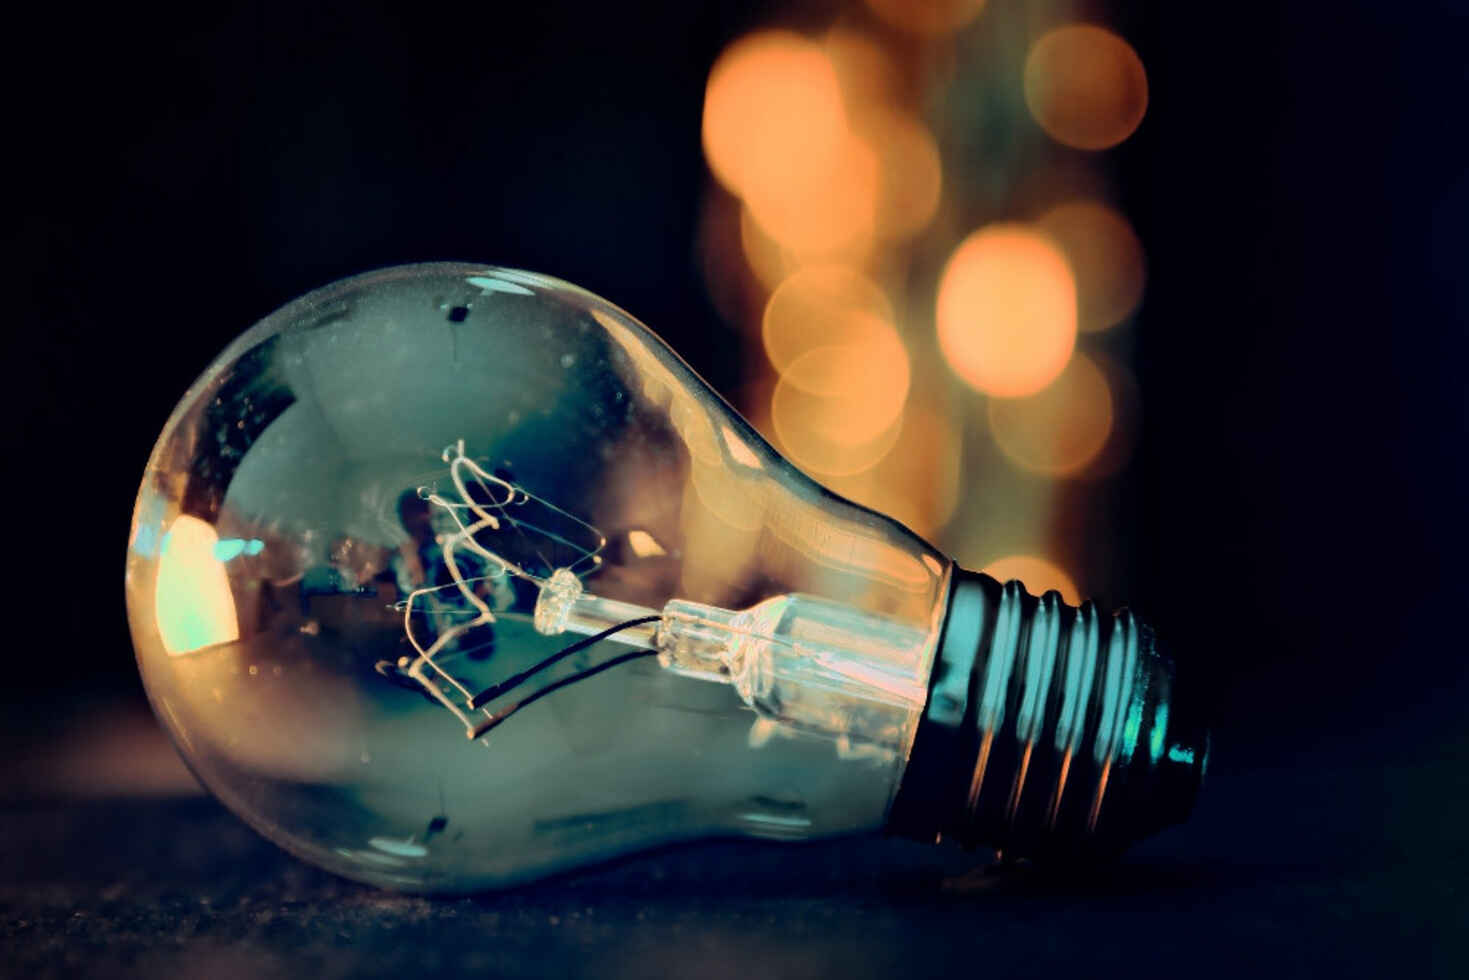 Lampe ou ampoule ? - Le blog de Domomat - conseils et astuces pour bricoler